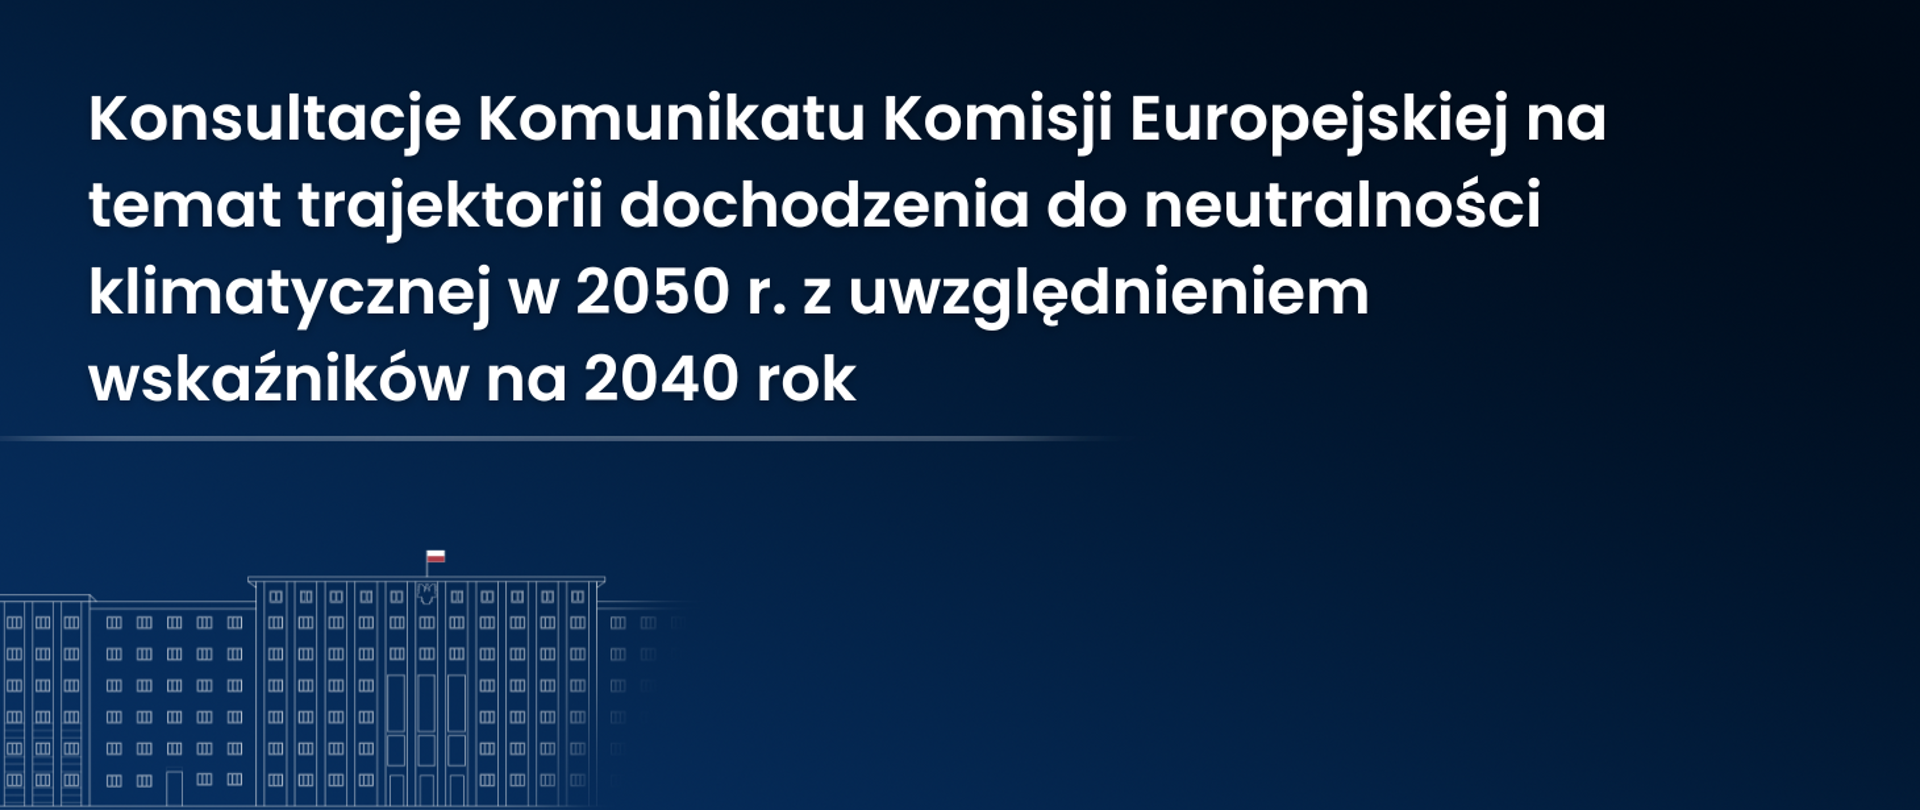 Konsultacje Komunikatu Komisji Europejskiej na temat trajektorii dochodzenia do neutralności klimatycznej w 2050 r. z uwzględnieniem wskaźników na 2040 rok